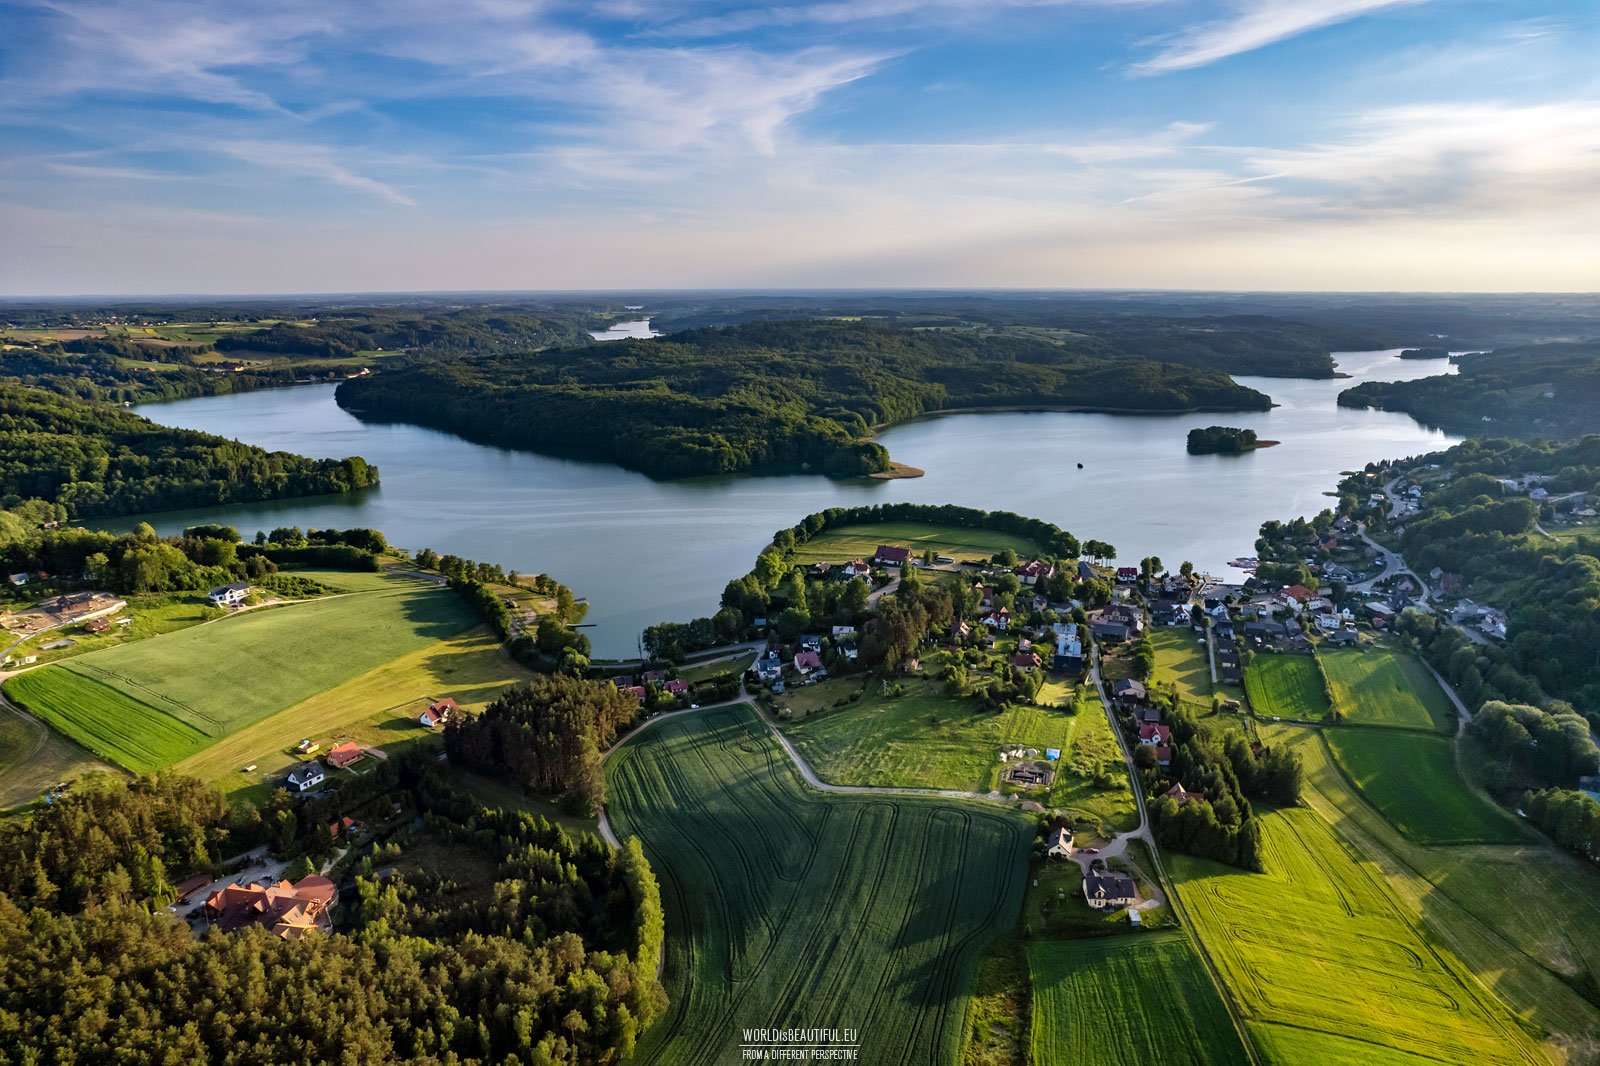 Ostrzyckie Lake from a bird's eye view